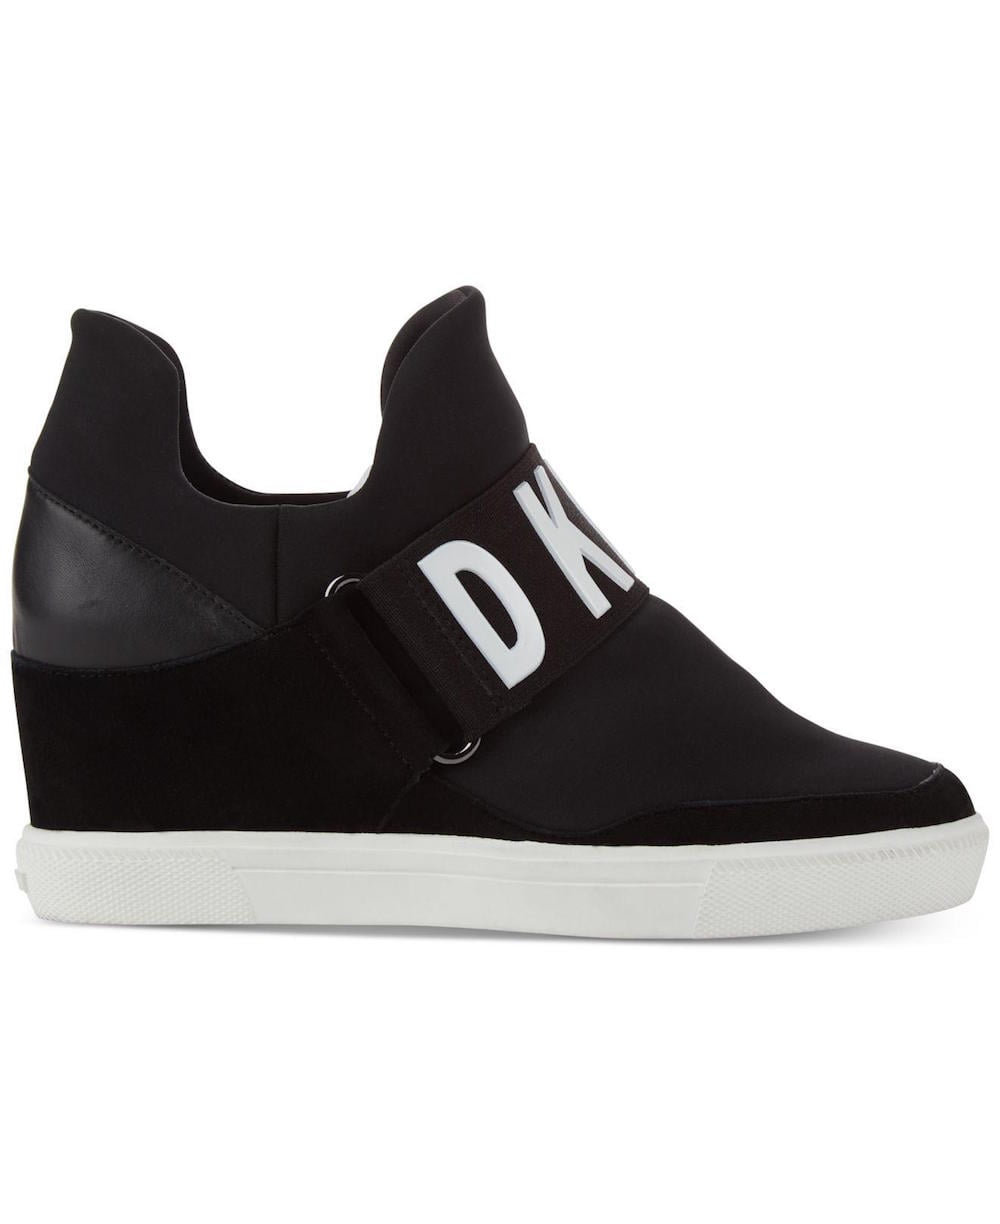 Womens DKNY Cosmos Slip On High Top Wedge Sneakers, Black, 10 US / 41 EU